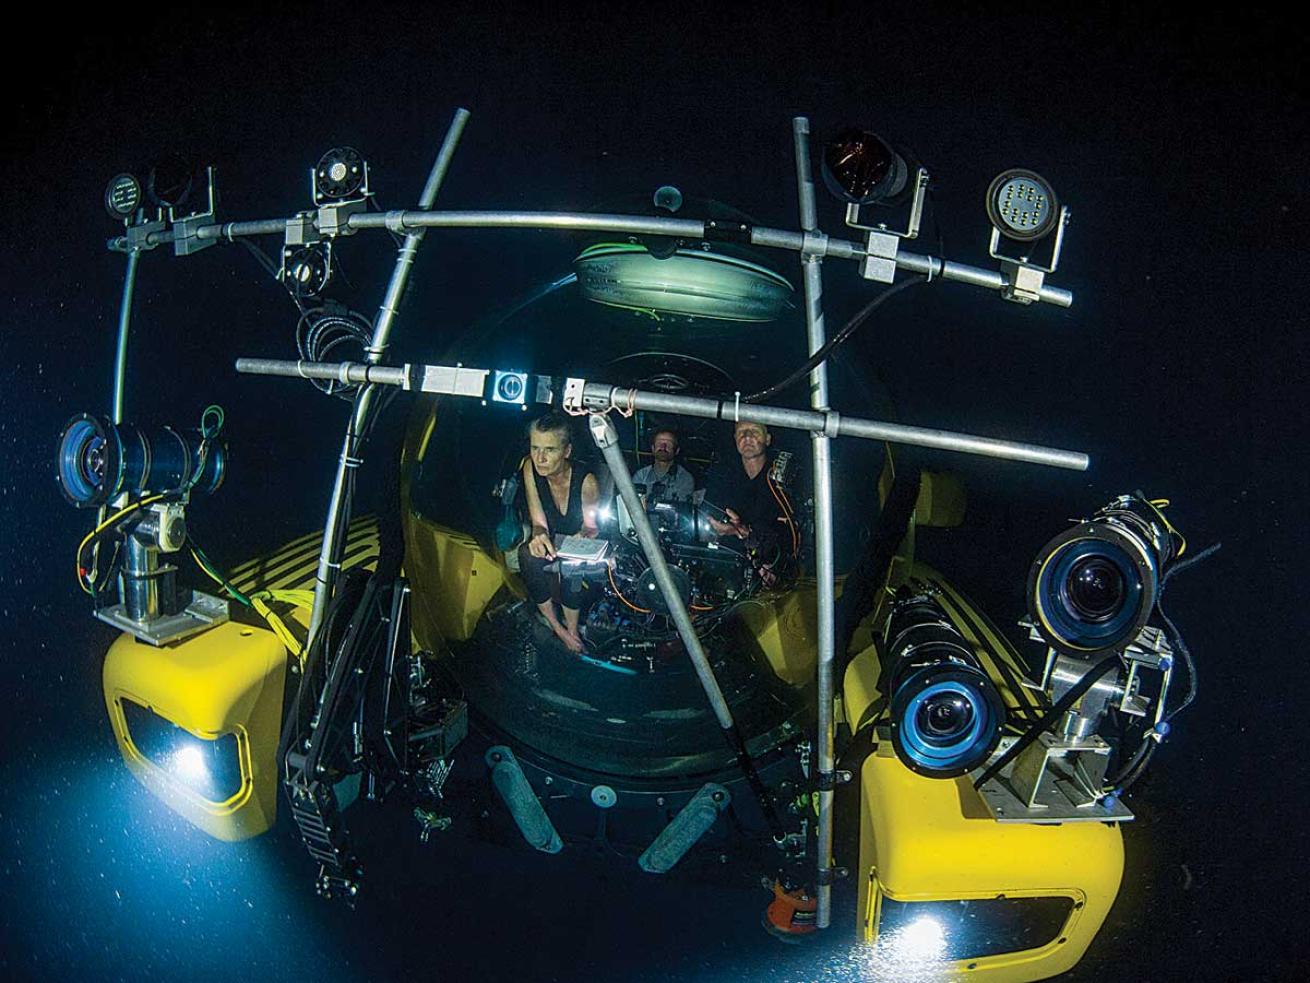 Underwater submersible Alucia 